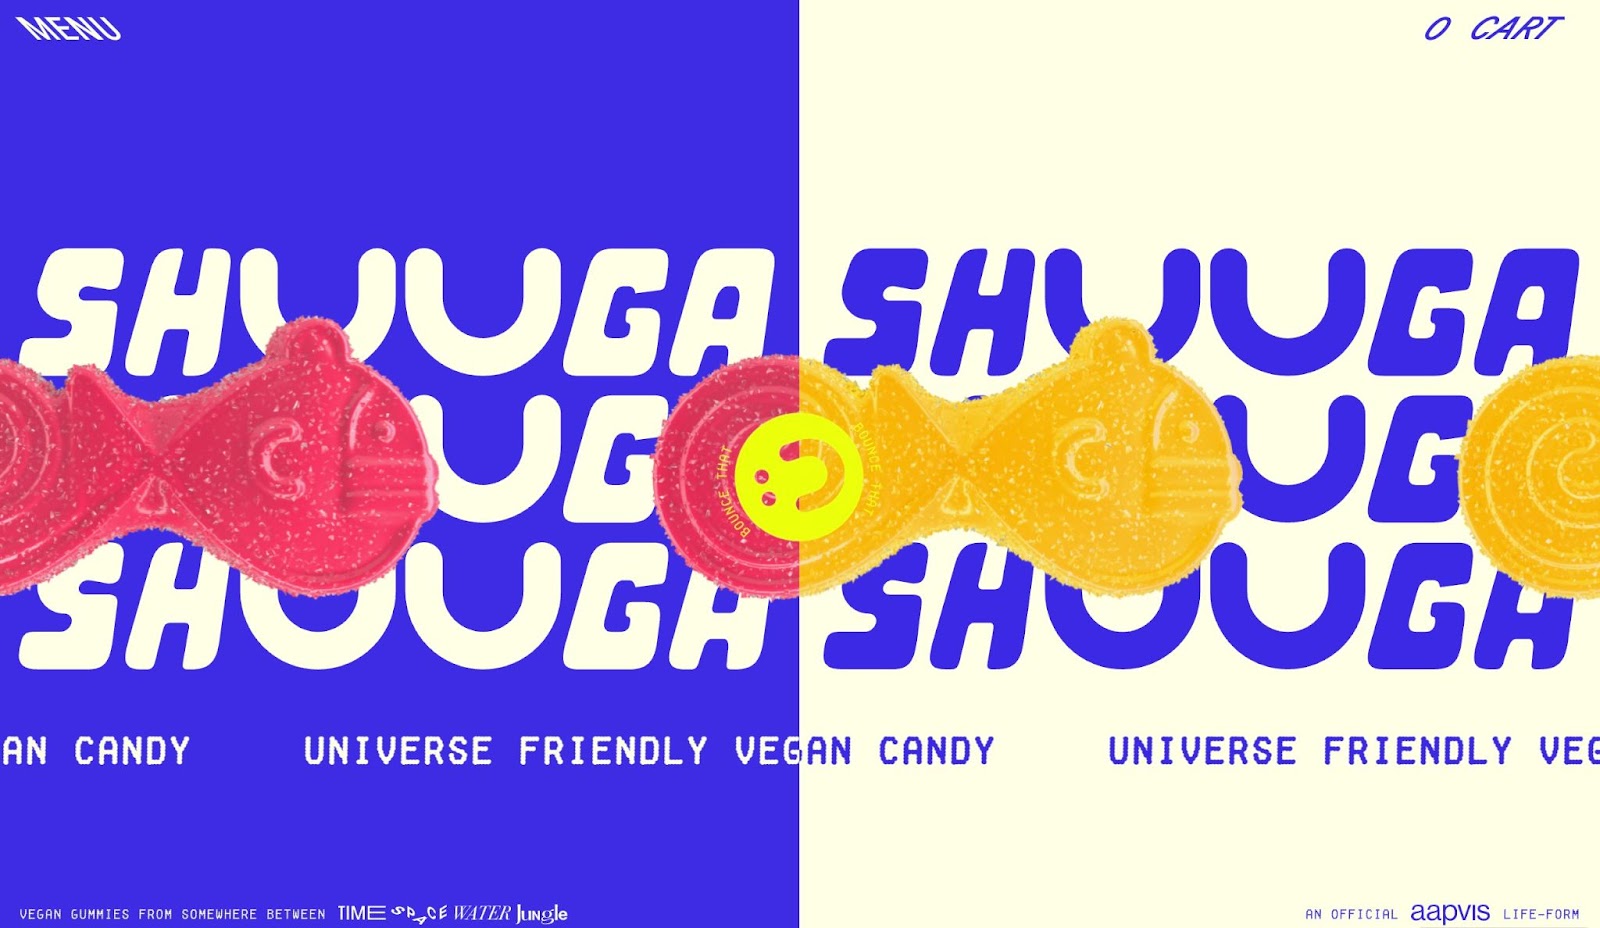 Header der Website von Shuga, vertikal in zwei Hälften geteilt. Die linke Seite ist mit cremefarbenem Text blau, der SHUGA liest. Die rechte Seite ist mit einem cremefarbenen Hintergrund und blauem Text identisch. Auf dem Hintergrund befinden sich ping- und orangefarbene Darstellungen ihrer veganen, fischförmigen Süßigkeiten.